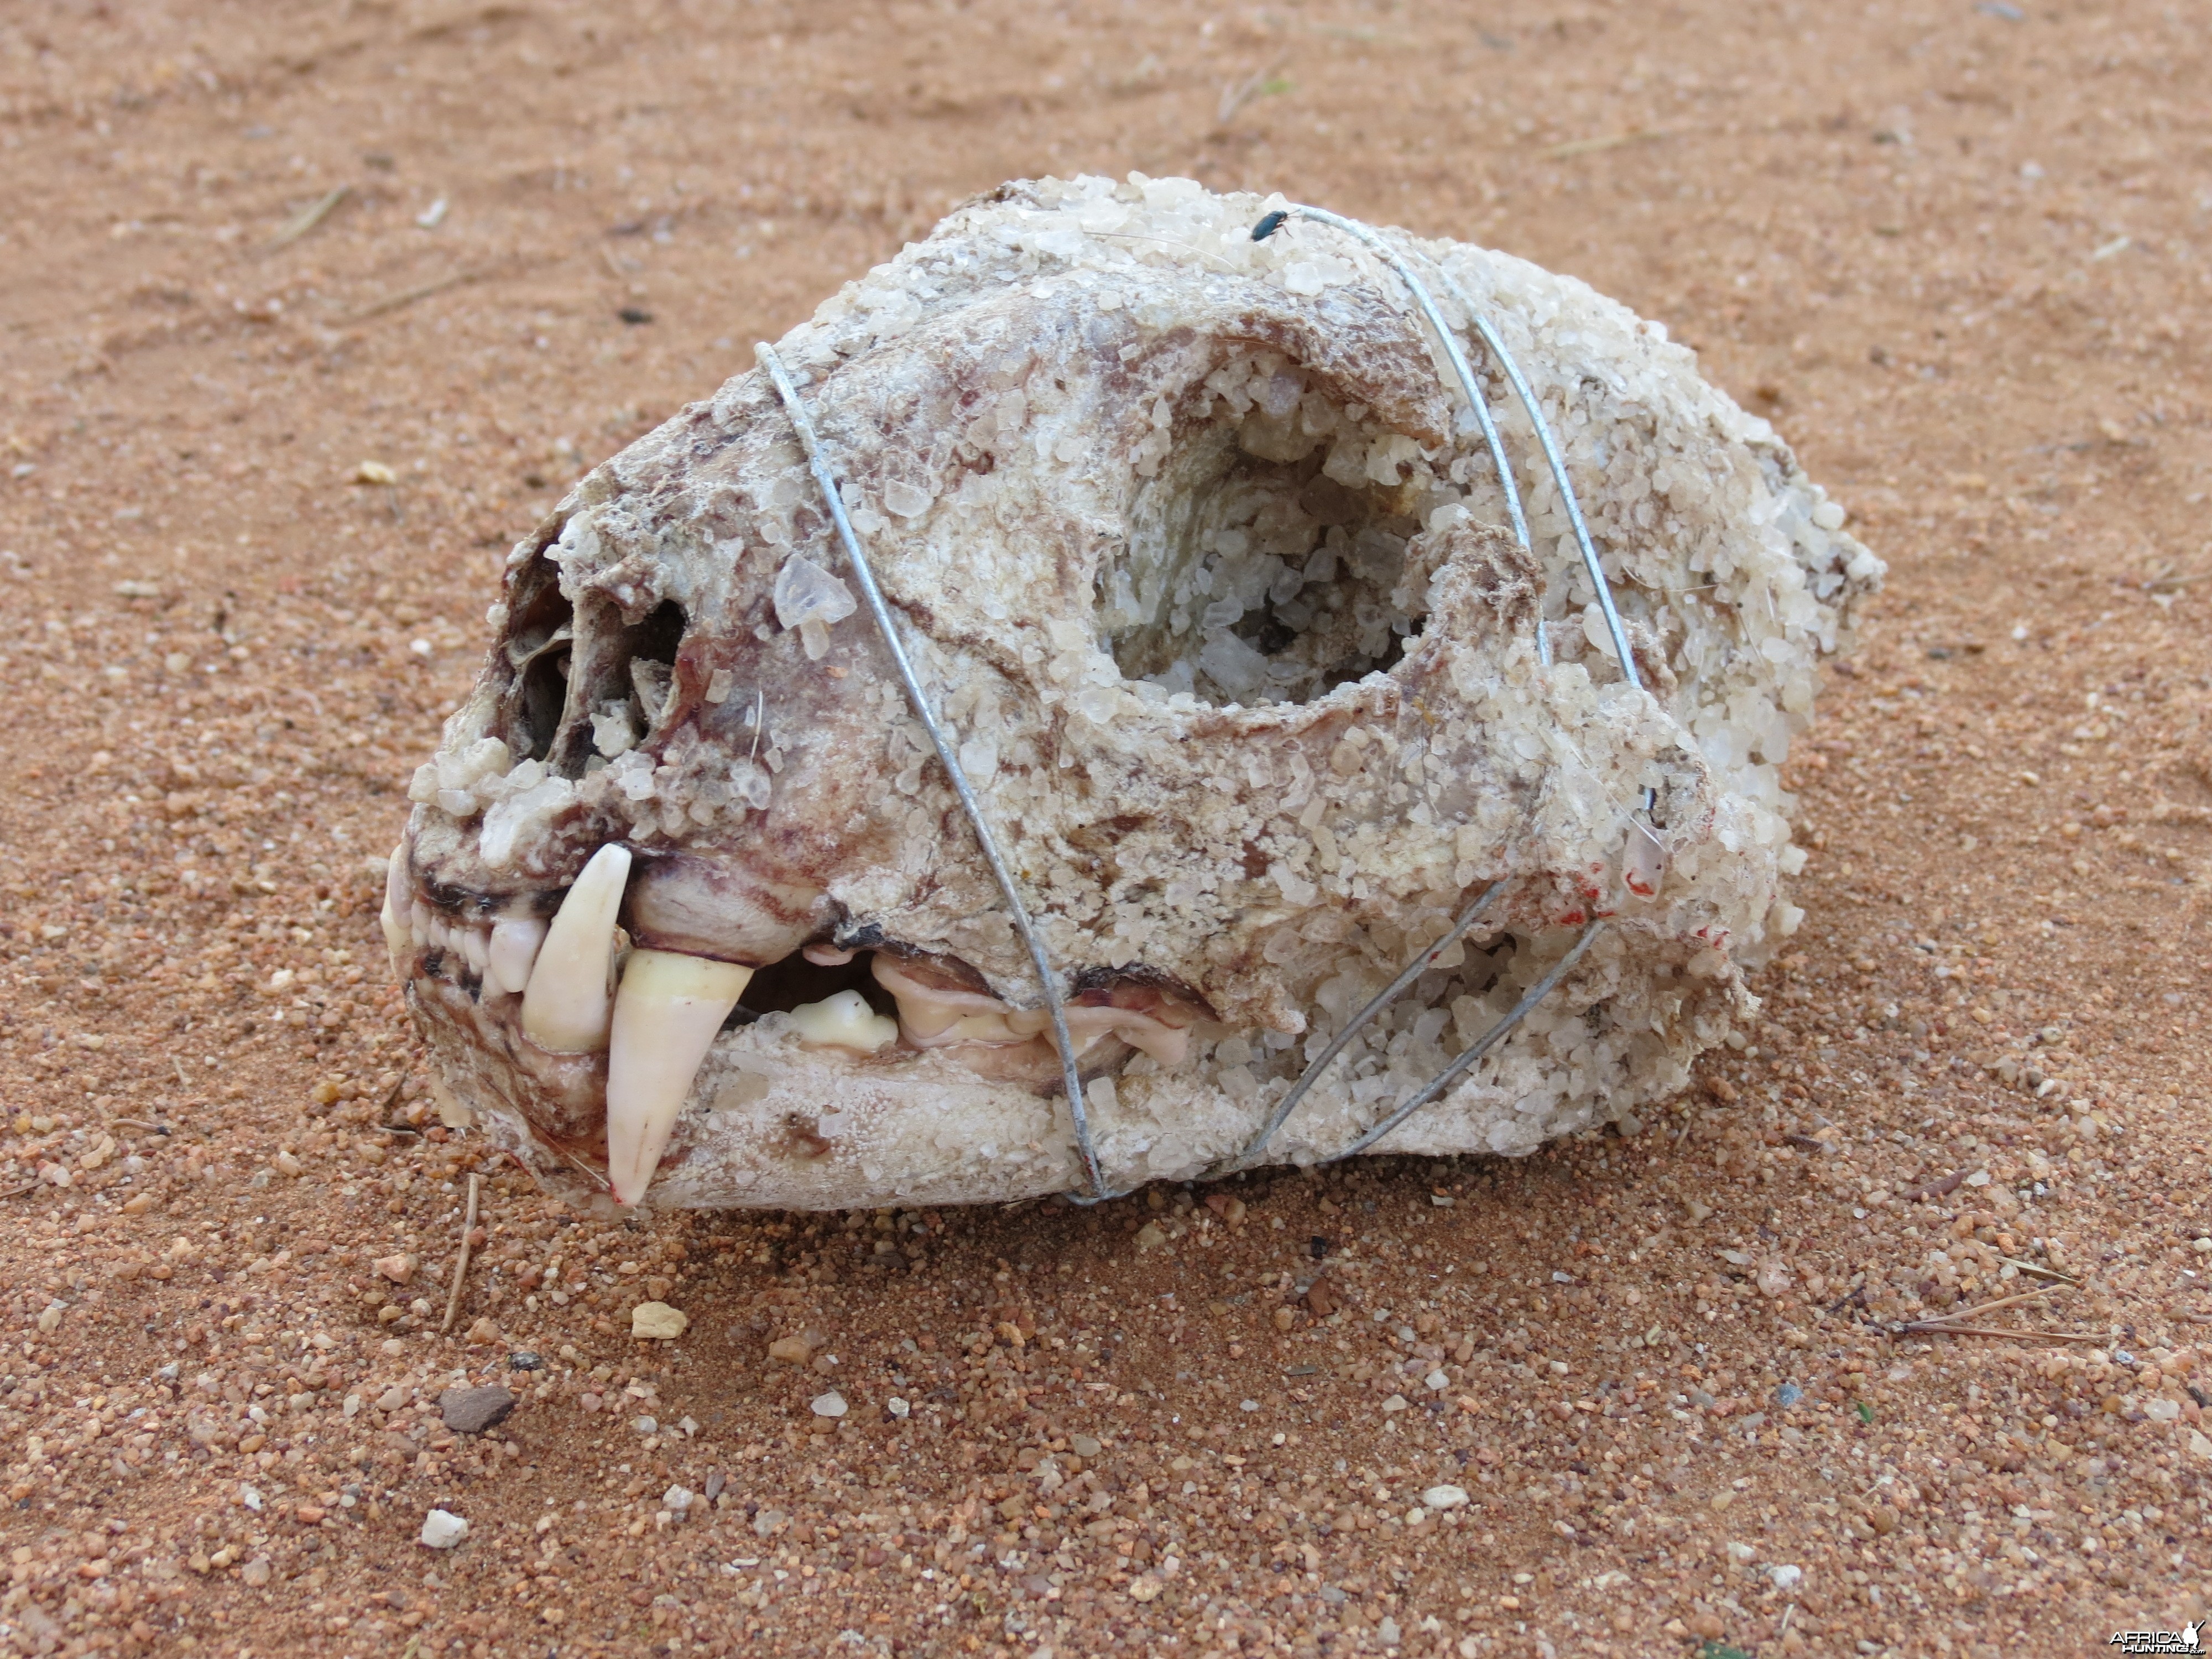 Leopard Skull